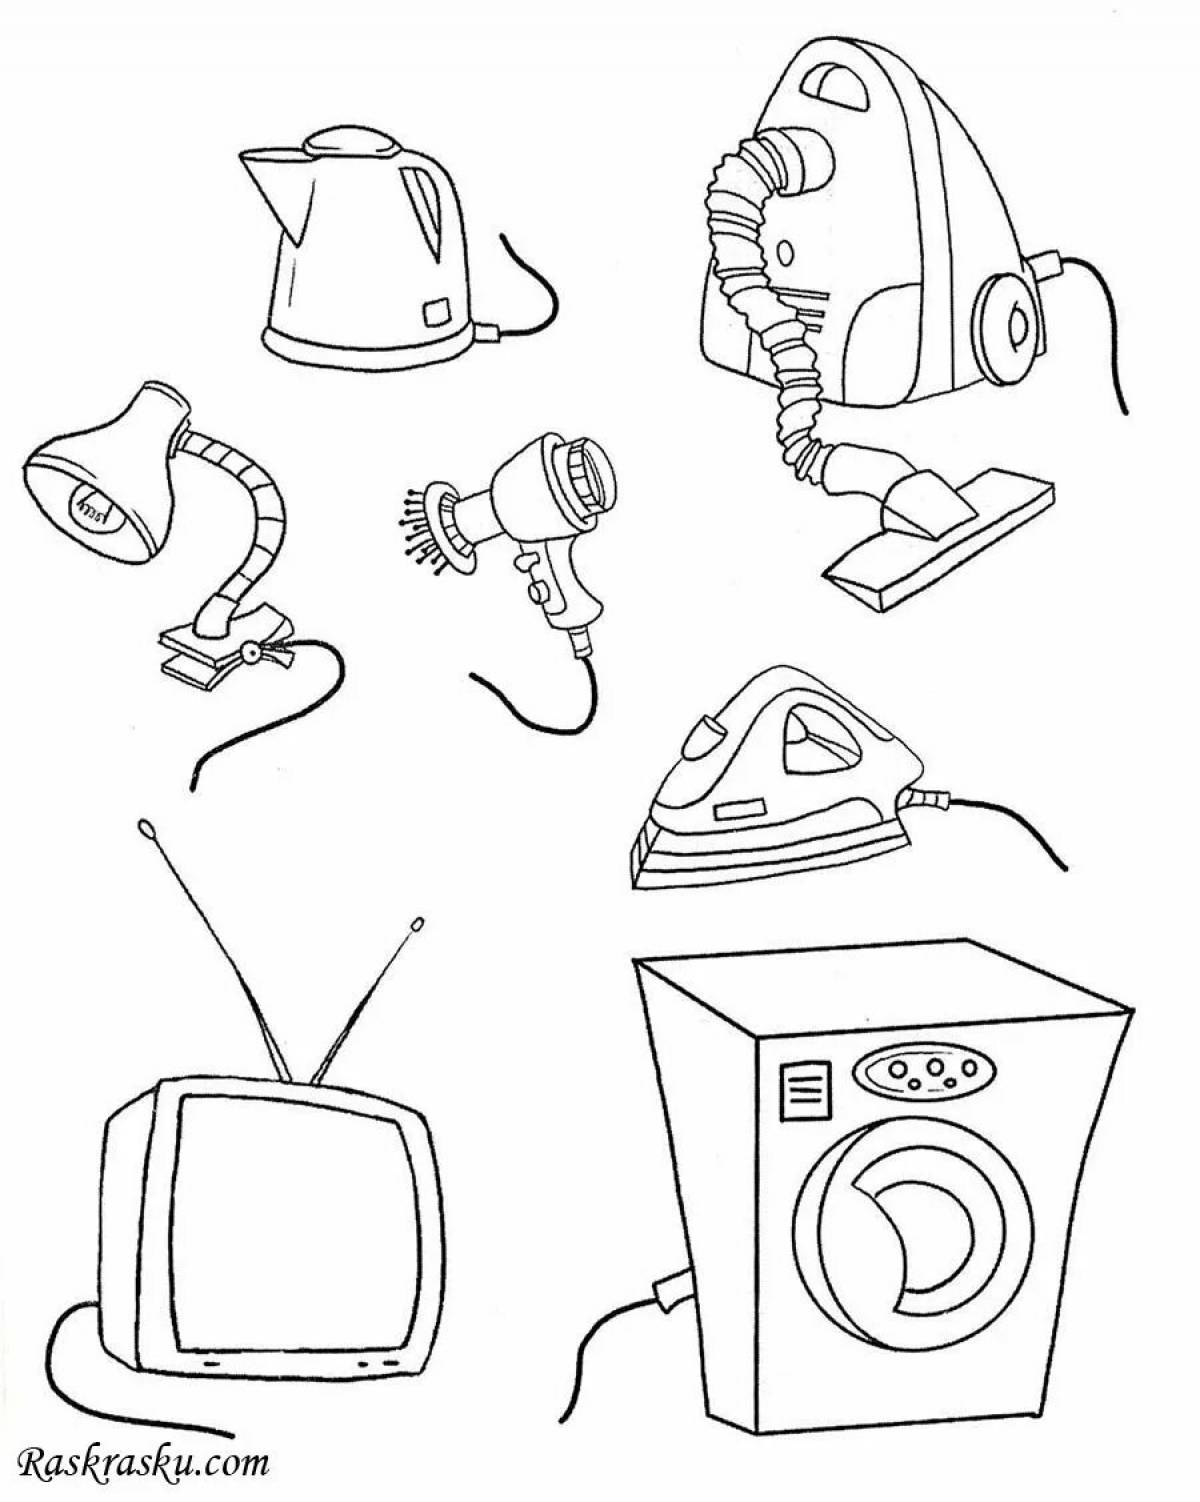 Household appliances for kindergarten #22